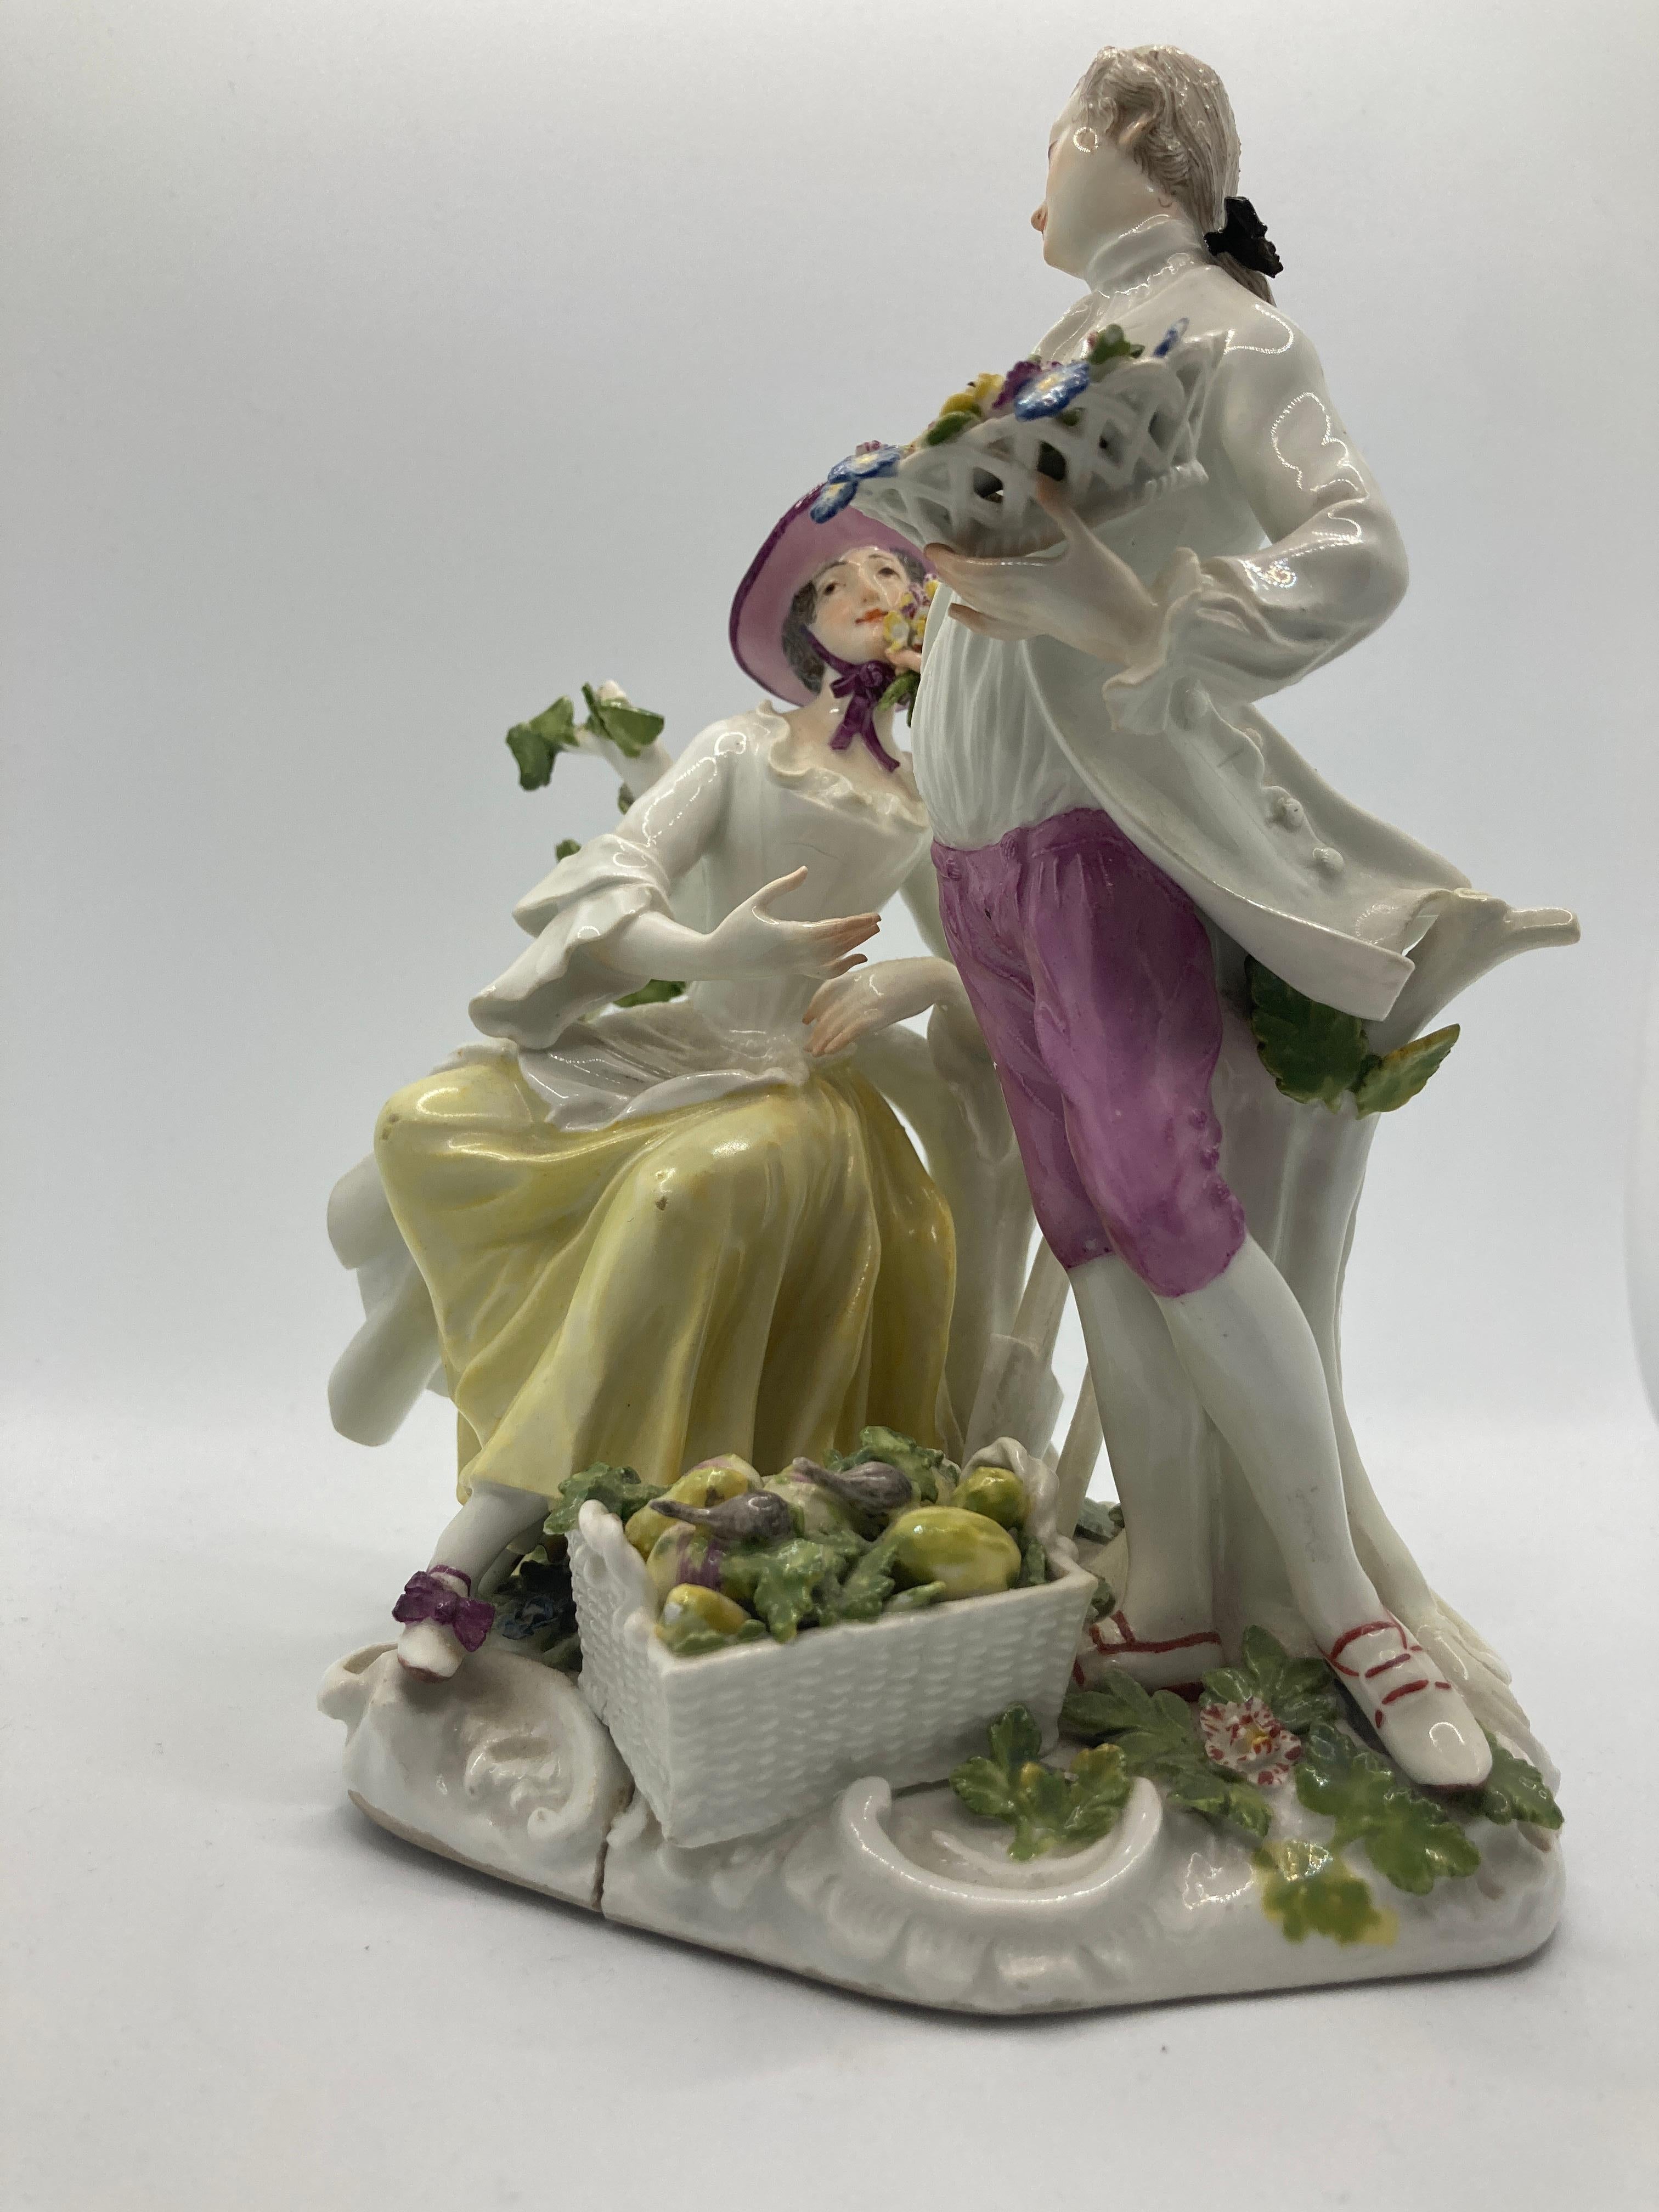 Meissener Porzellanfiguren des 18. Jahrhunderts, Gärtnerpaar. Modell 1584. 

Ein Gärtnerpaar, entworfen von Johann Joachim Kaendler, mit Blumen und Gemüsekorb, sitzend  / stehend bzw. auf / gegen einen Branch mit Rocaille-Sockel, bemalt, verblasste